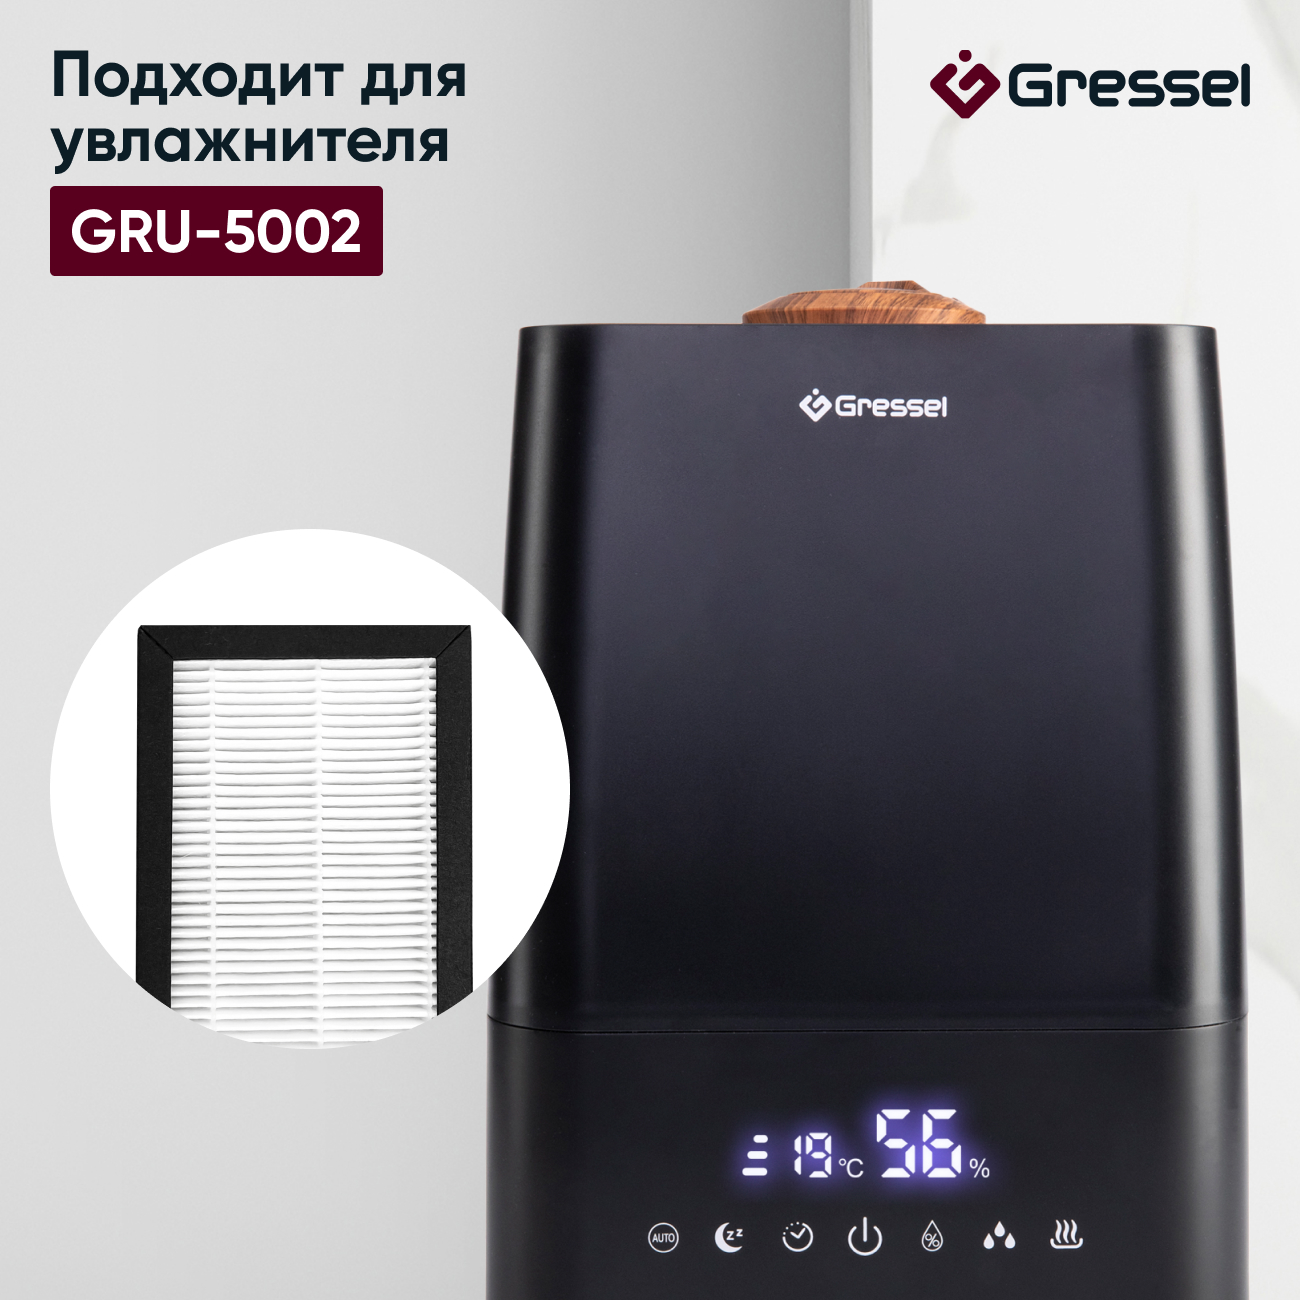 HEPA фильтр увлажнителя воздуха Gressel G-5003 для модели GRU-5002